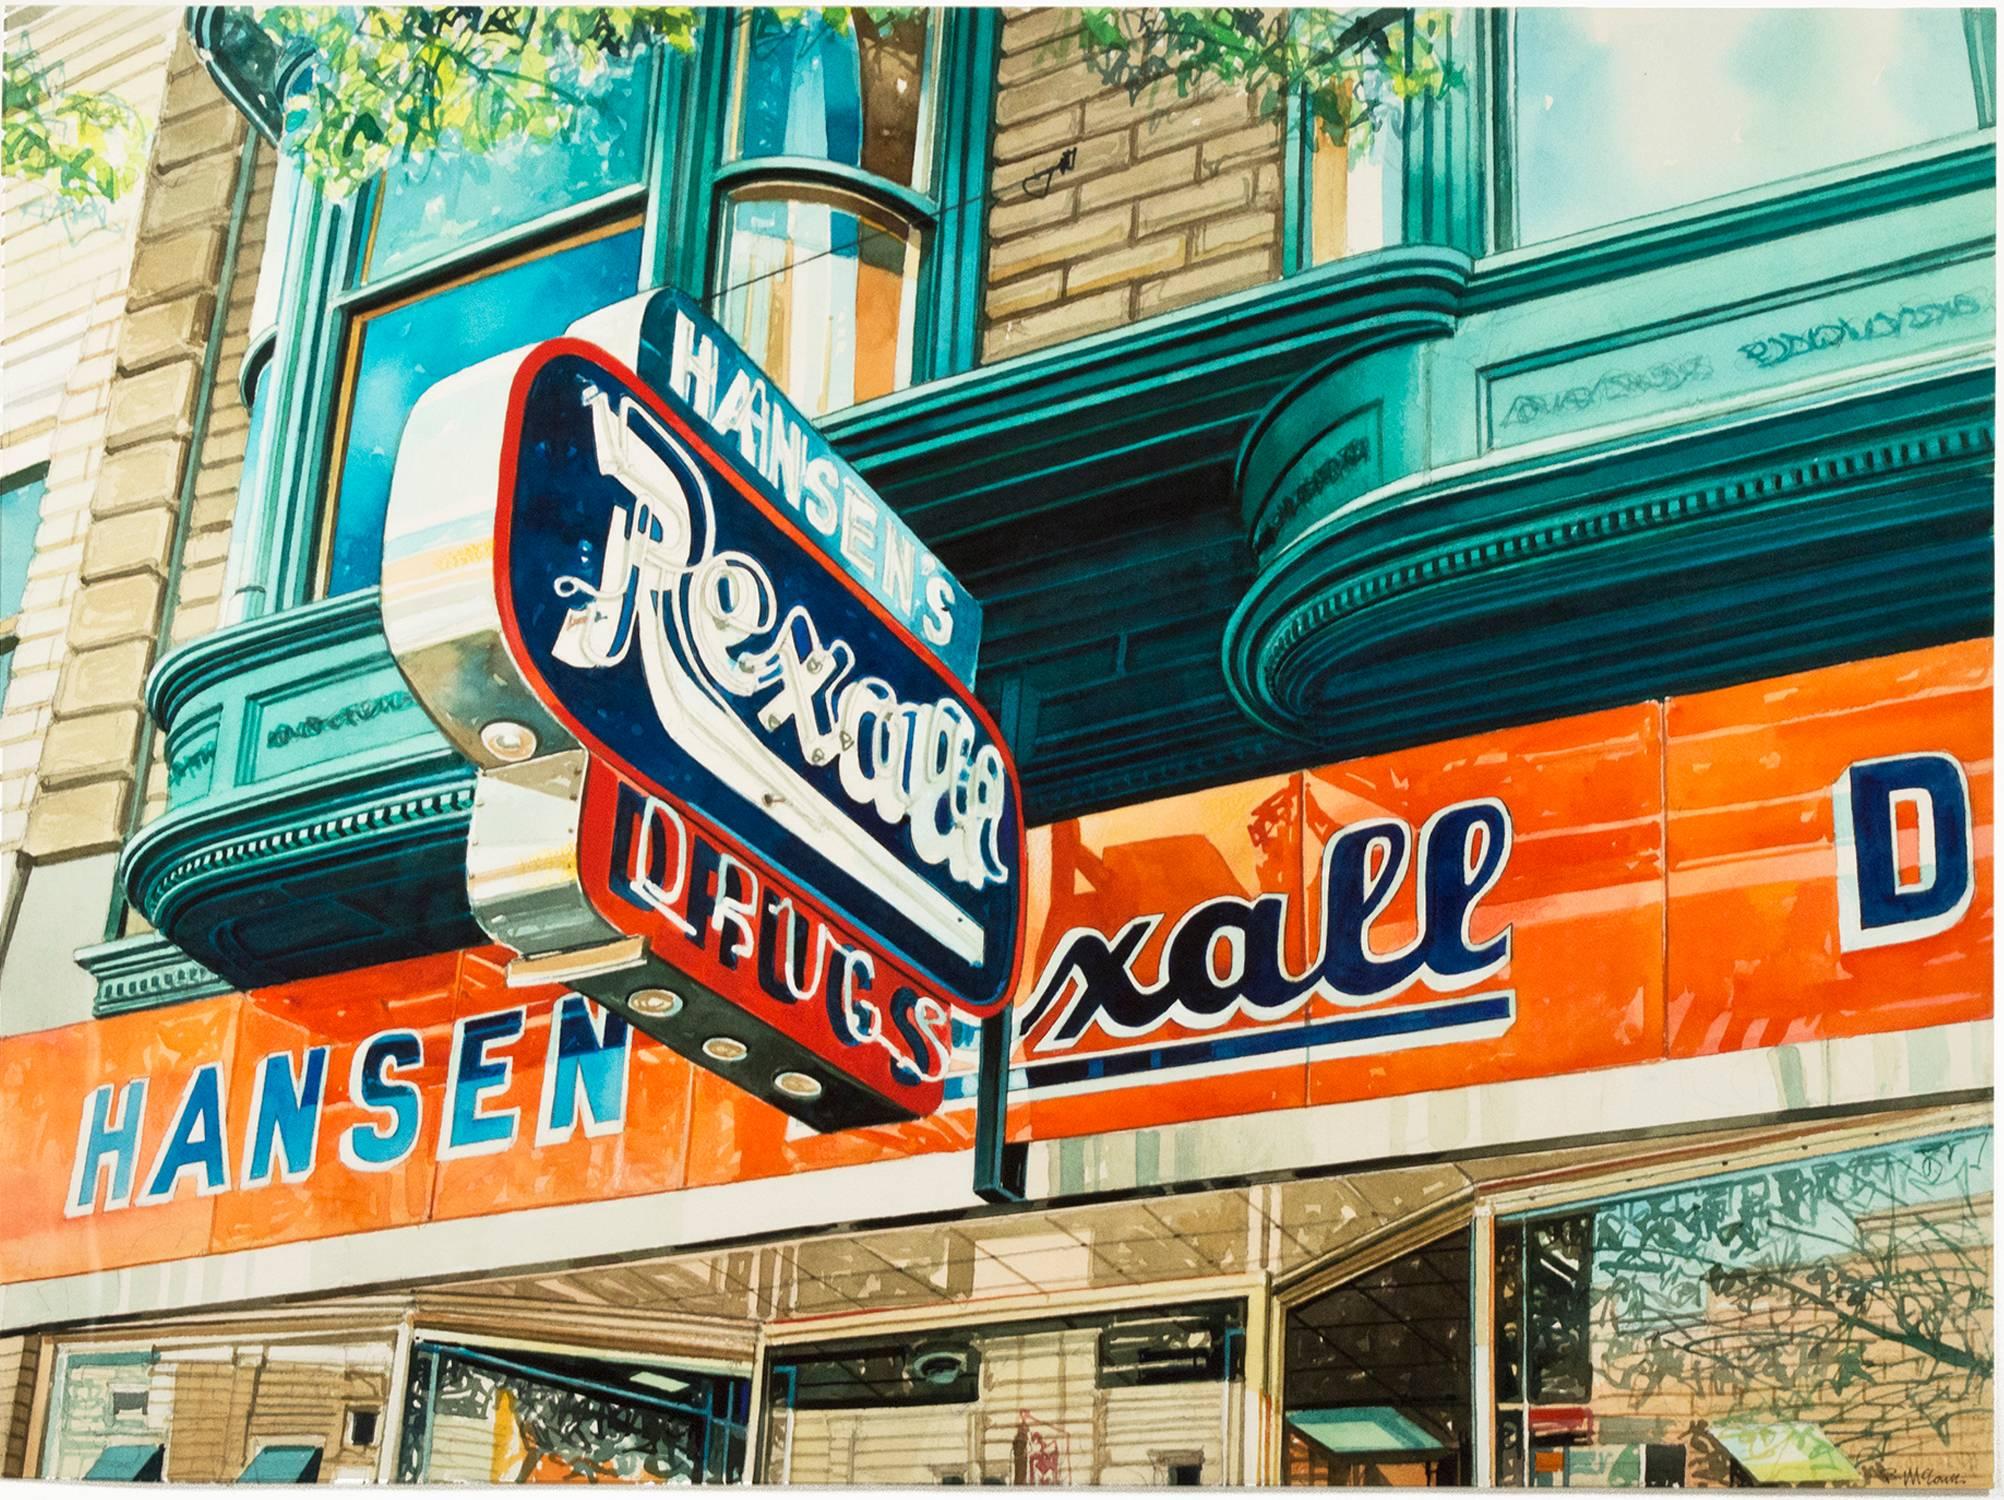 "Hansen's Rexall Drugs" ist ein signiertes Original-Aquarell von Bruce McCombs. Es zeigt die Fassade eines Drogeriemarktes mit seiner Leuchtreklame und den reflektierenden Fenstern. Dieses Gemälde zeigt McCombs' exquisite Aufmerksamkeit für Licht